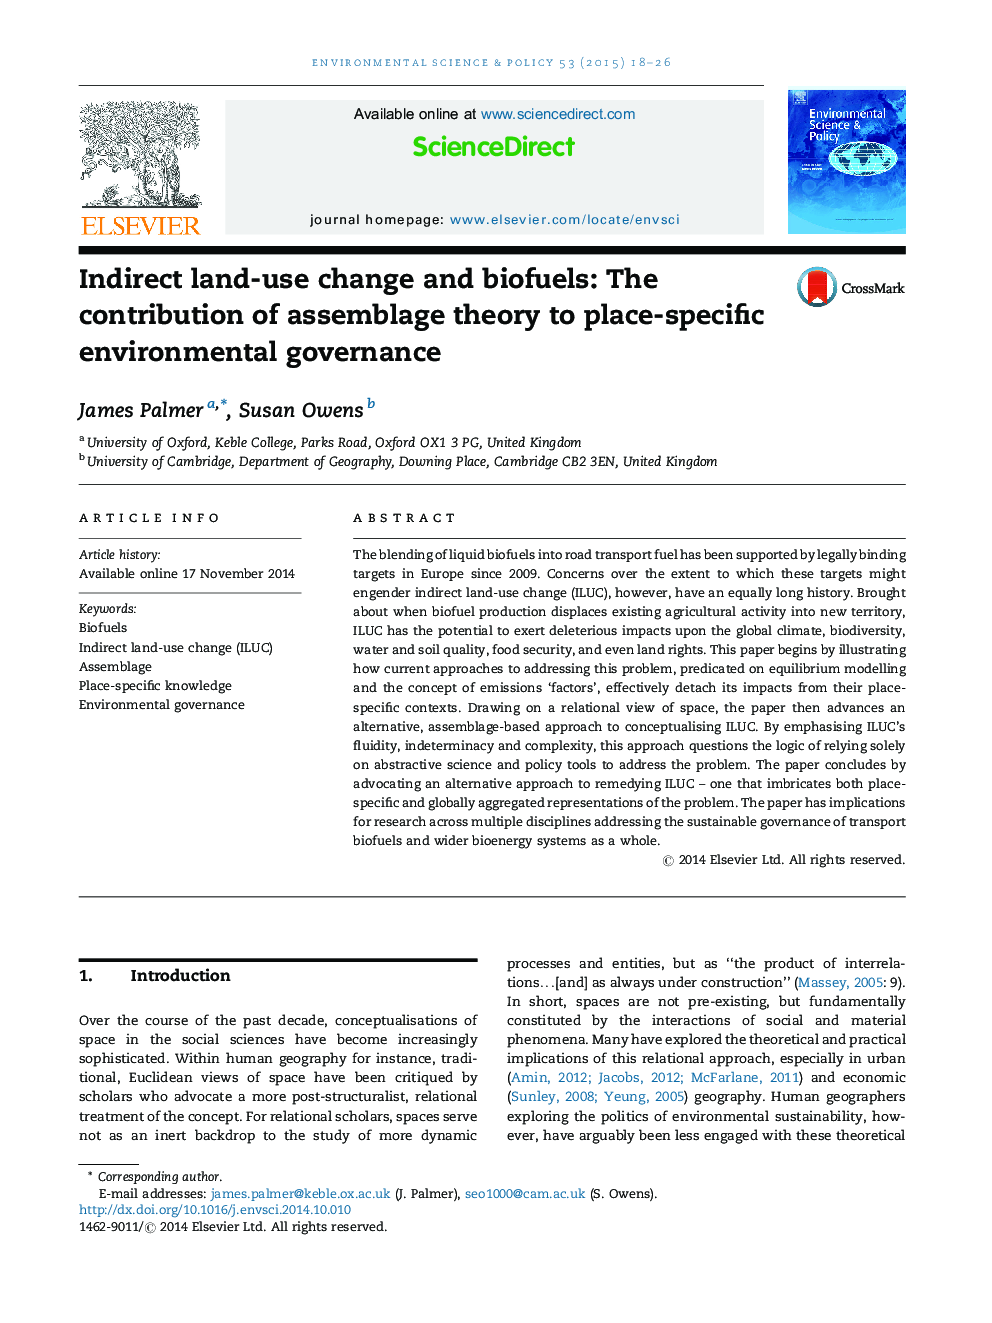 تغییرات غیر مستقیم زمینکاو و سوخت های زیستی: سهم تئوری مونتاژ در راستای نظارت بر محیط زیست خاص 